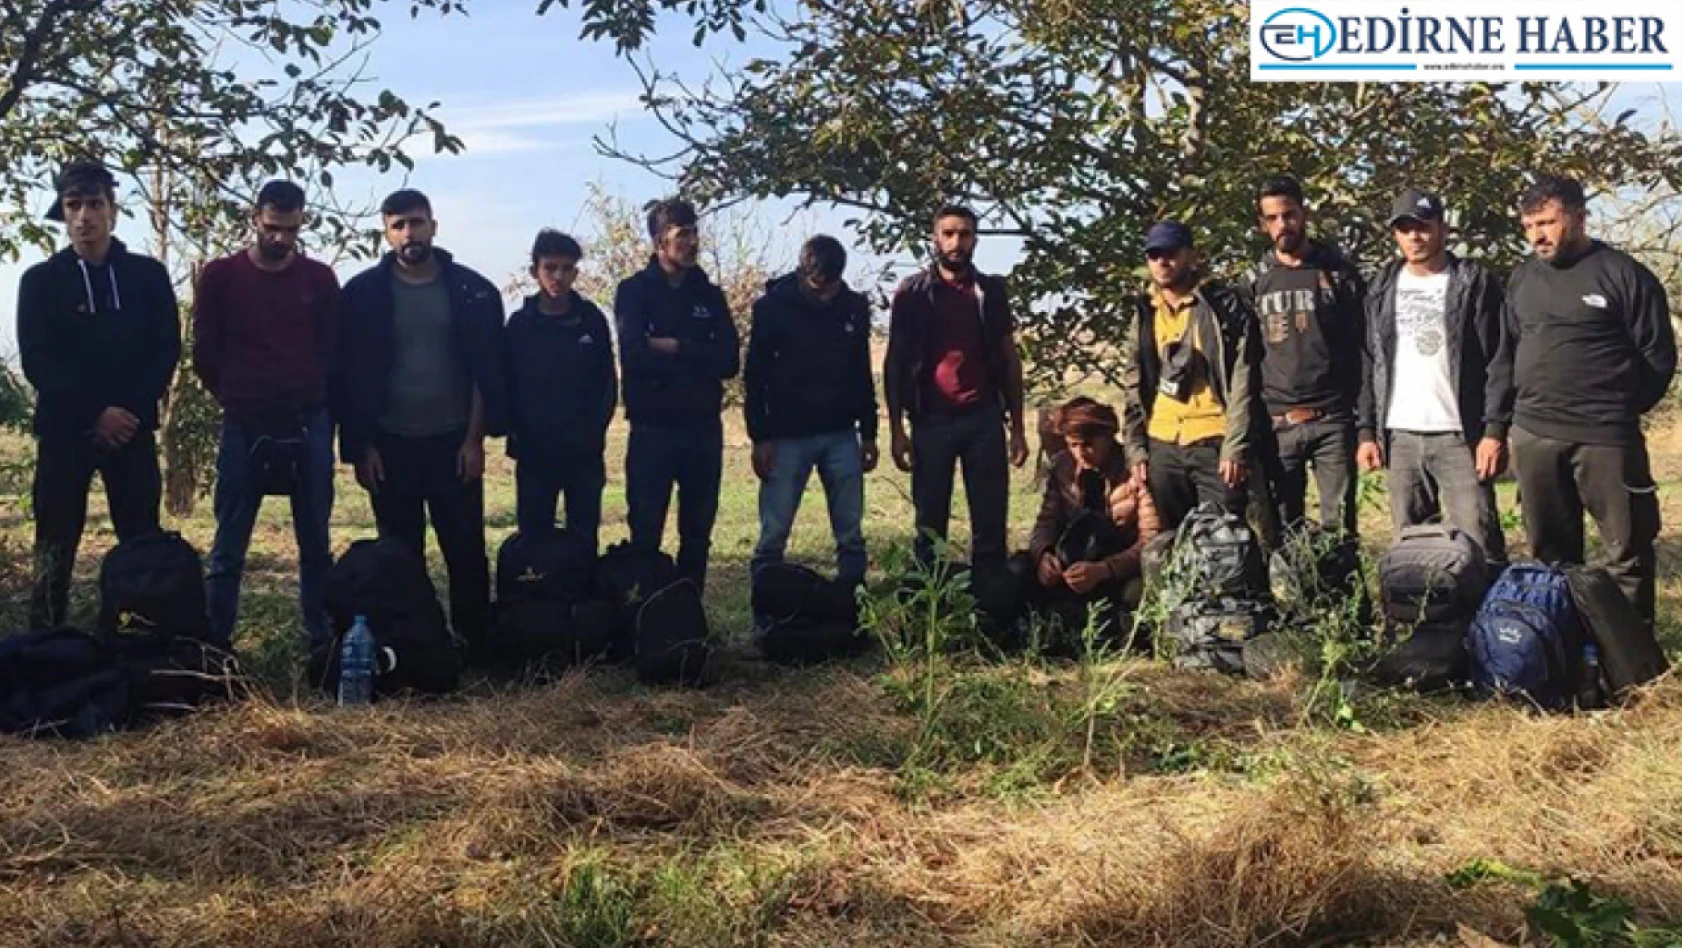 Edirne'de 35 organizatör ve 1209 göçmen yakalandı